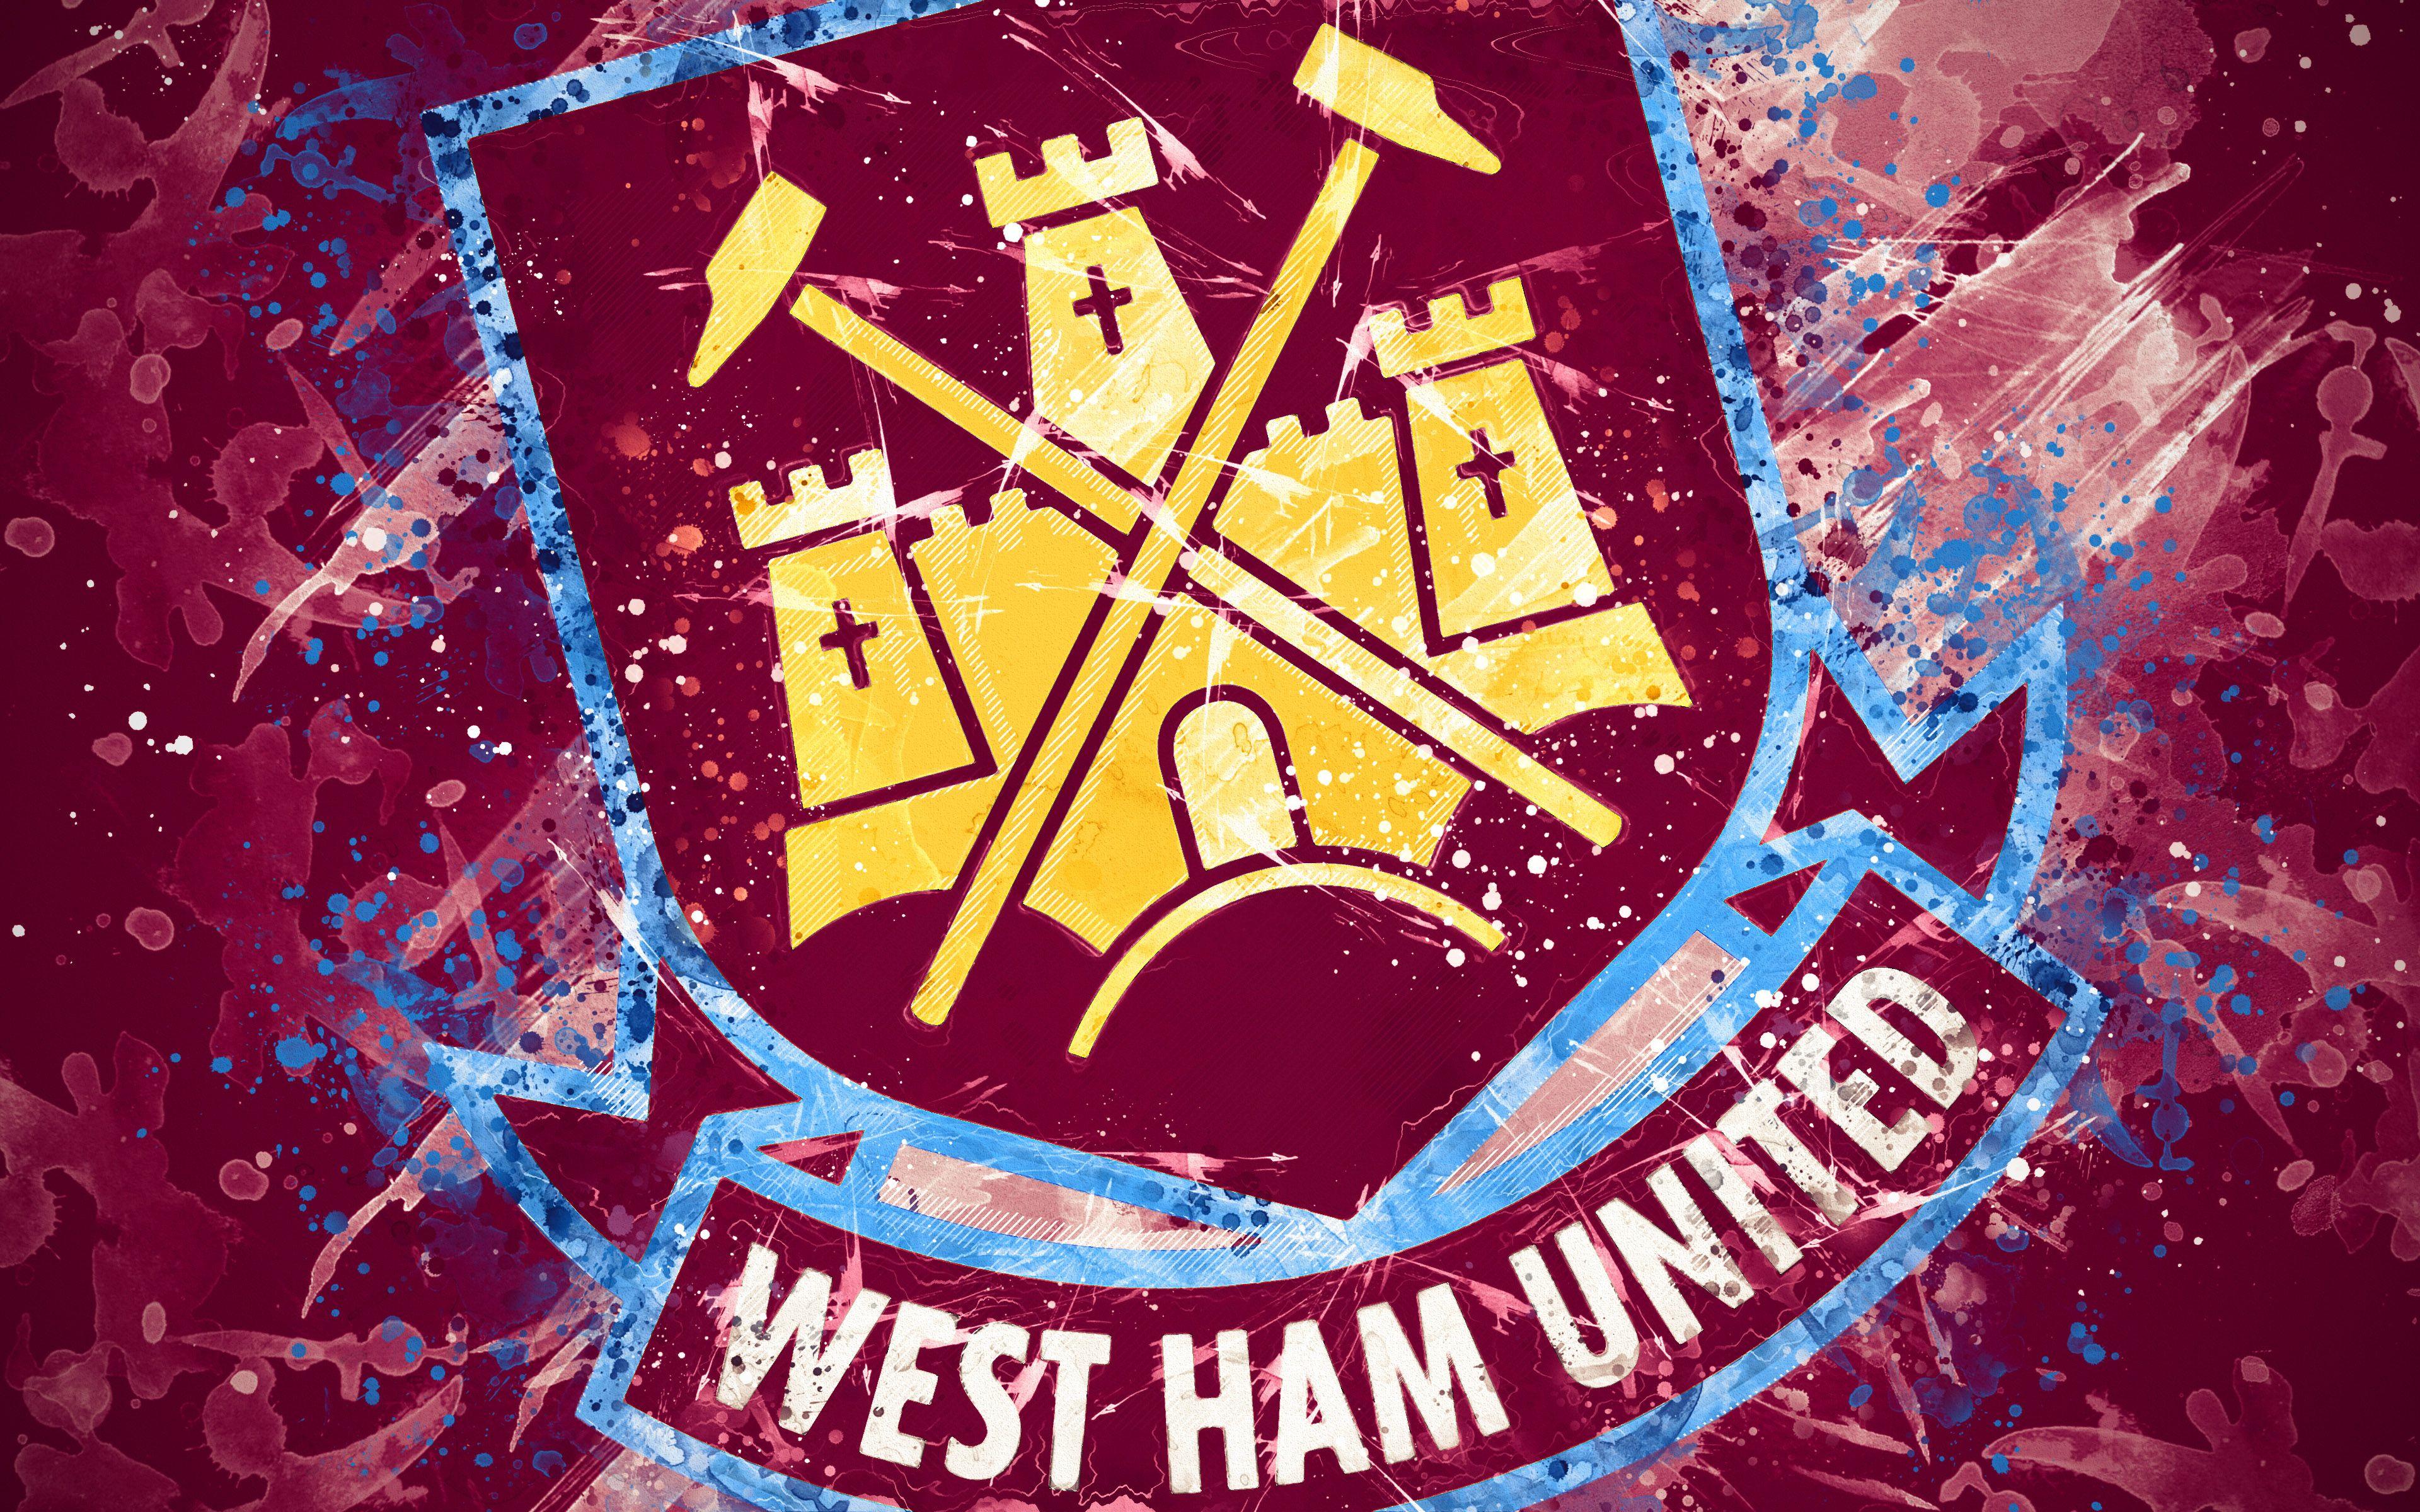 West Ham Emblem : WEST HAM UNITED Wood Carving Crest Logo in SE5 London